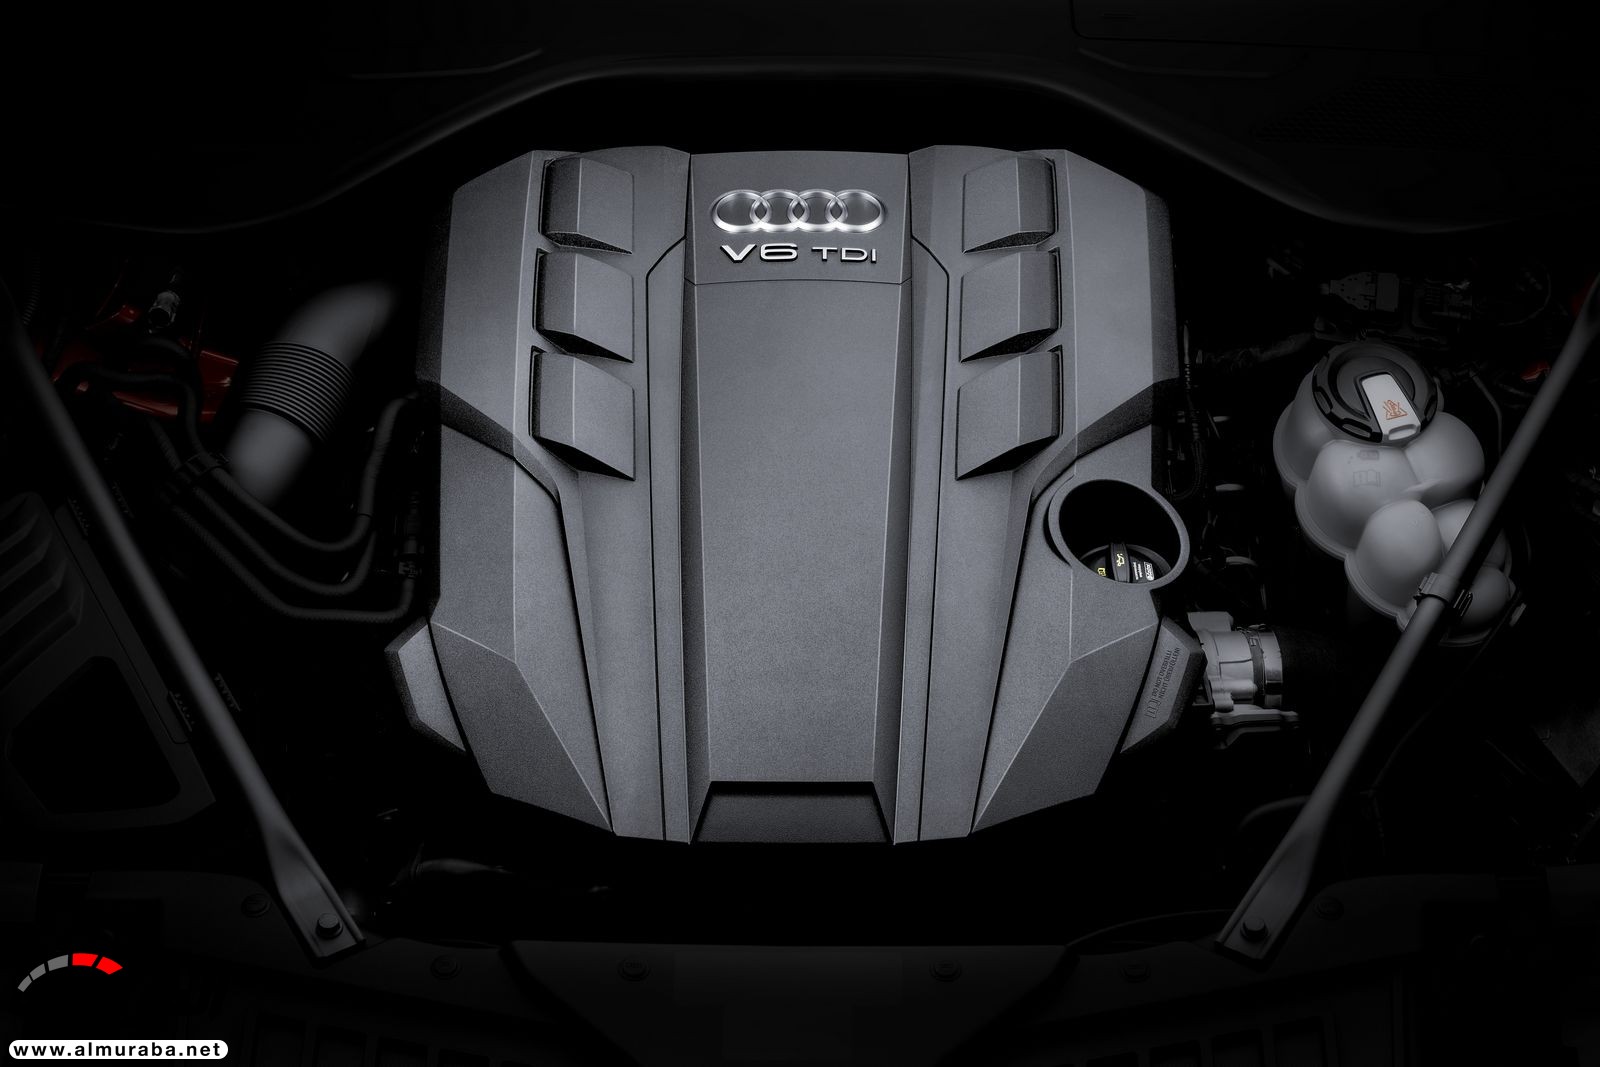 أودي A8 2018 الجديدة كلياً تكشف نفسها بتصميم وتقنيات متطورة "معلومات + 100 صورة" Audi A8 28